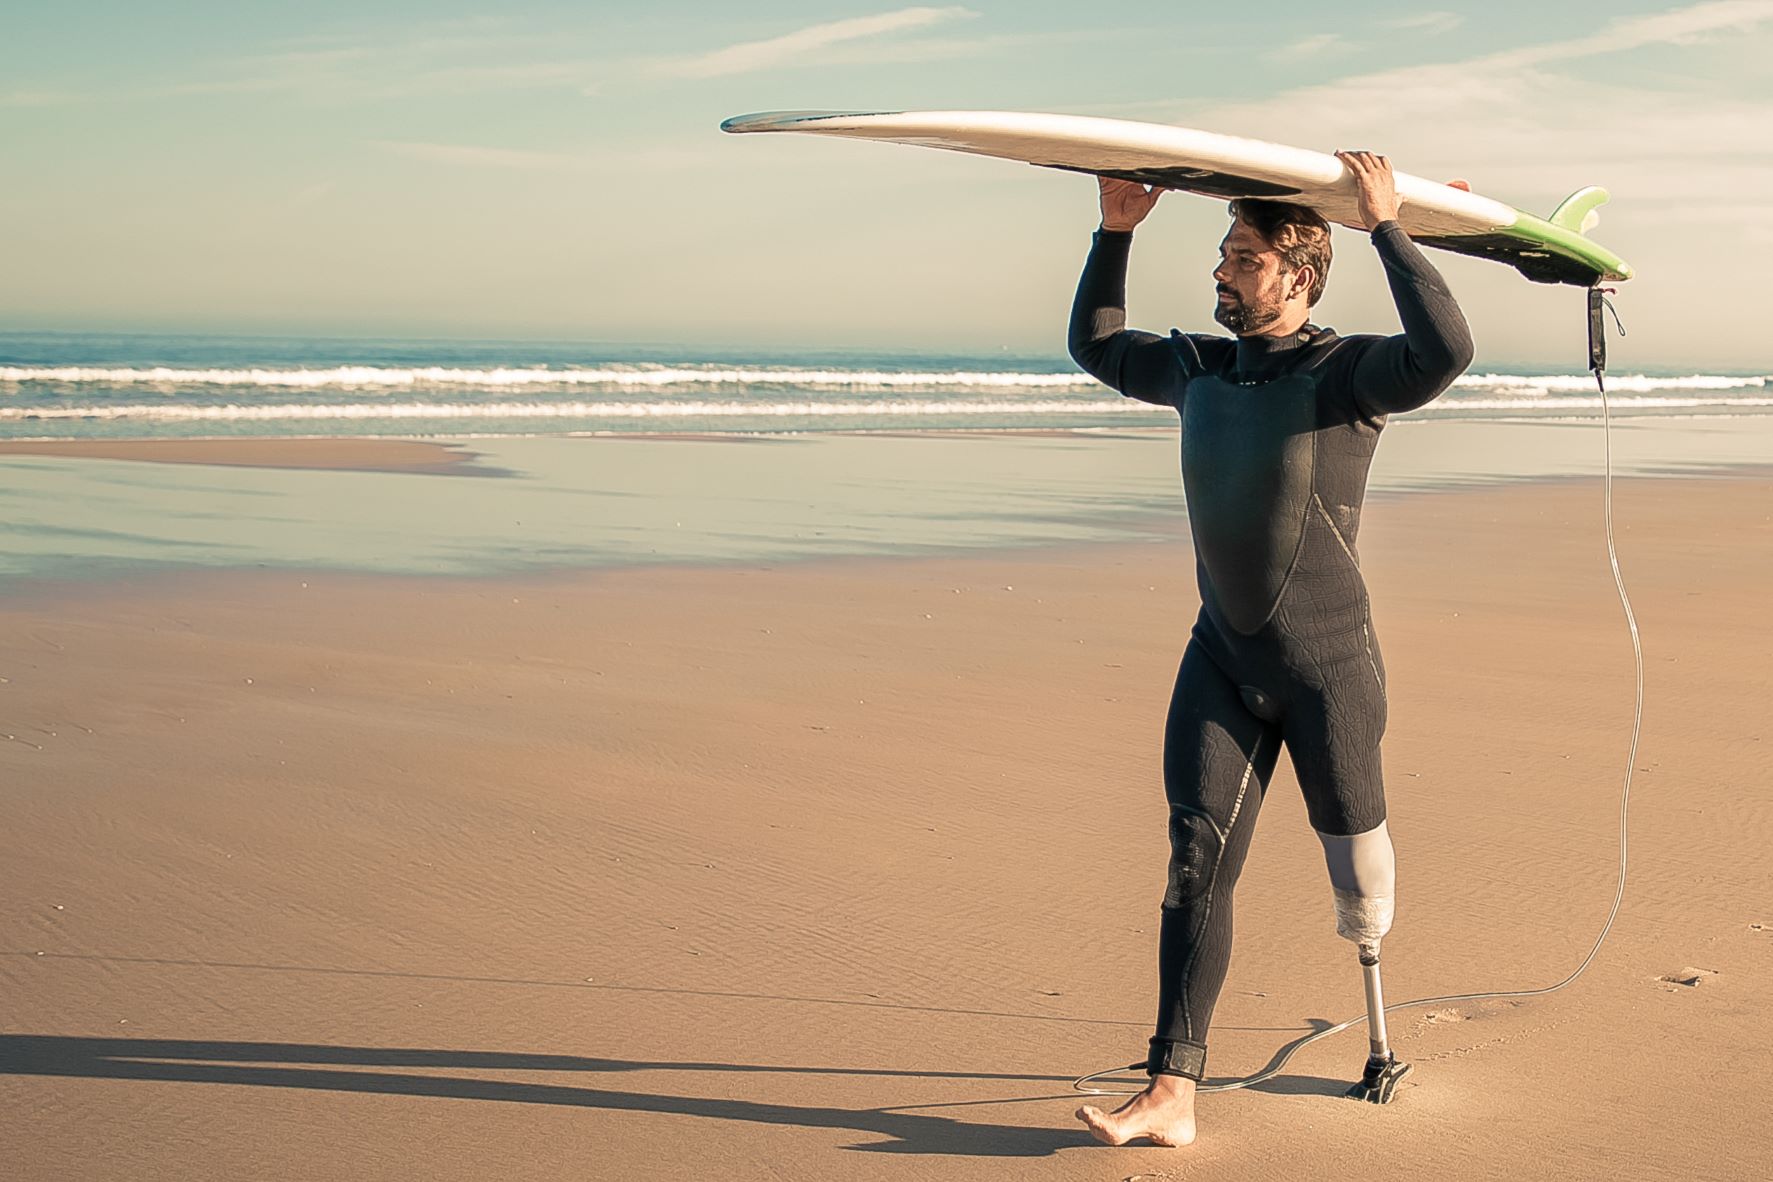 Surfer walking along a beach, surfboard held above head